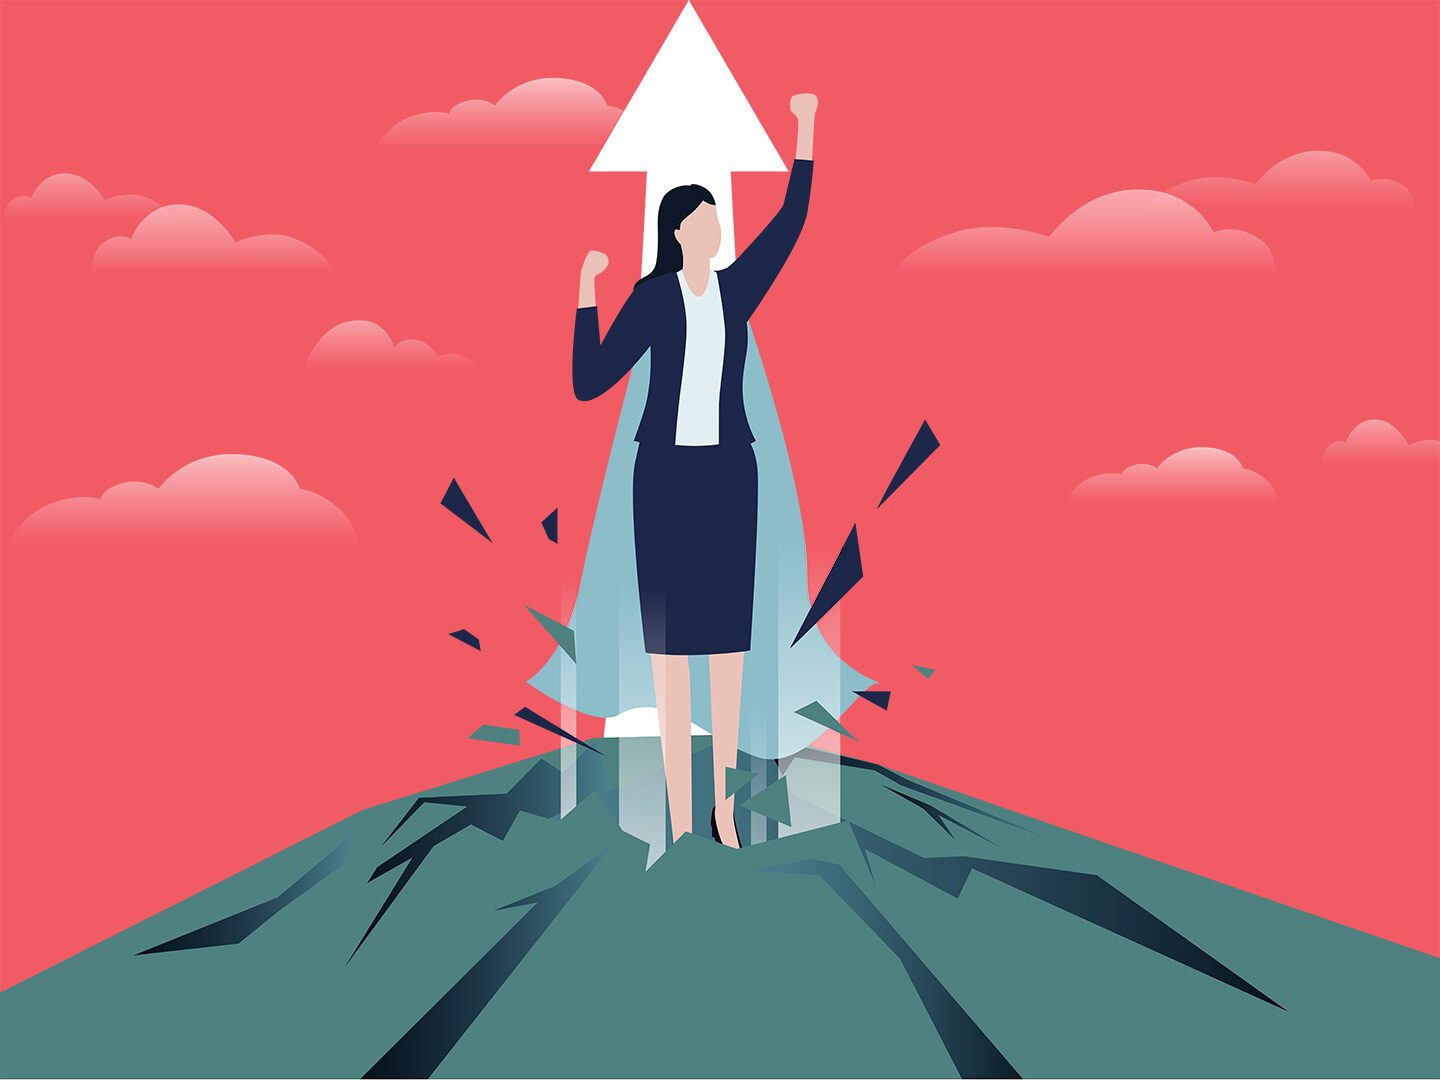 Ilustration: Frau im Business Outfit steigt raketenmäßig in die Luft; roter Hintergrund; Pfeil nach oben deuten Aufstieg an